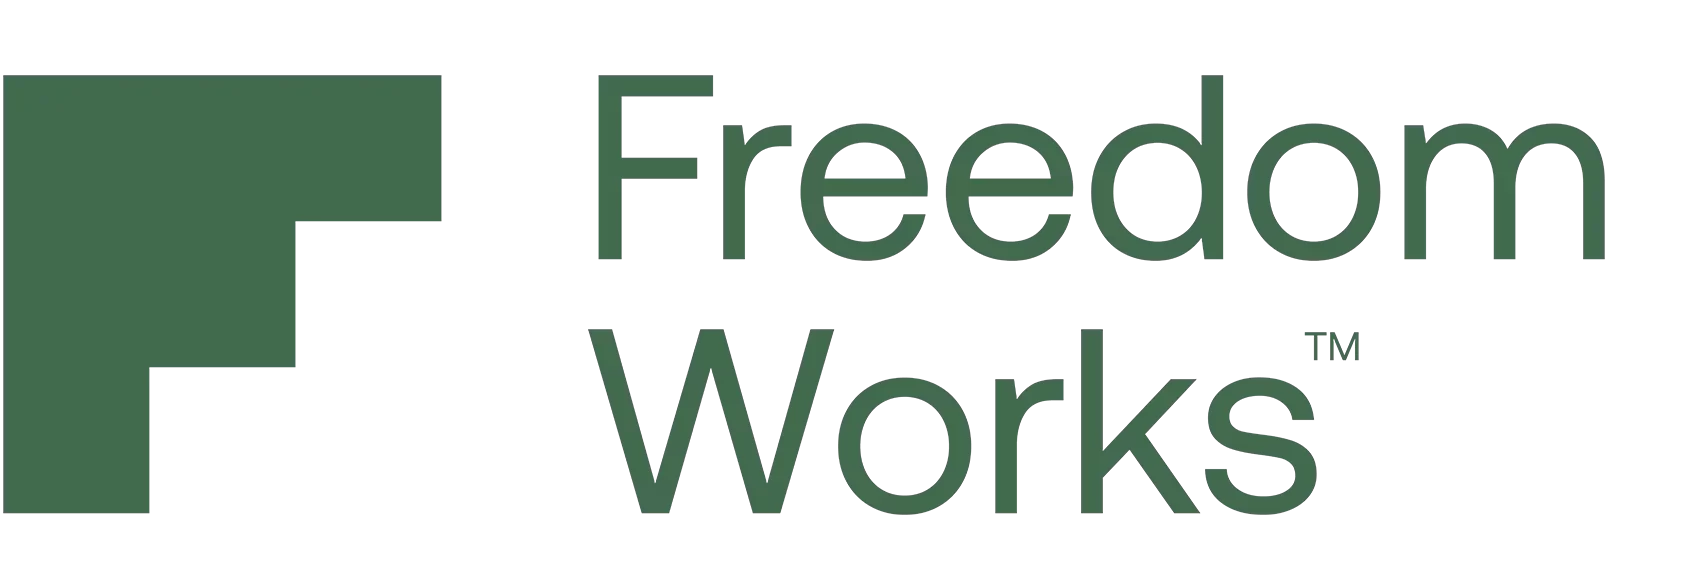 Freedom Works